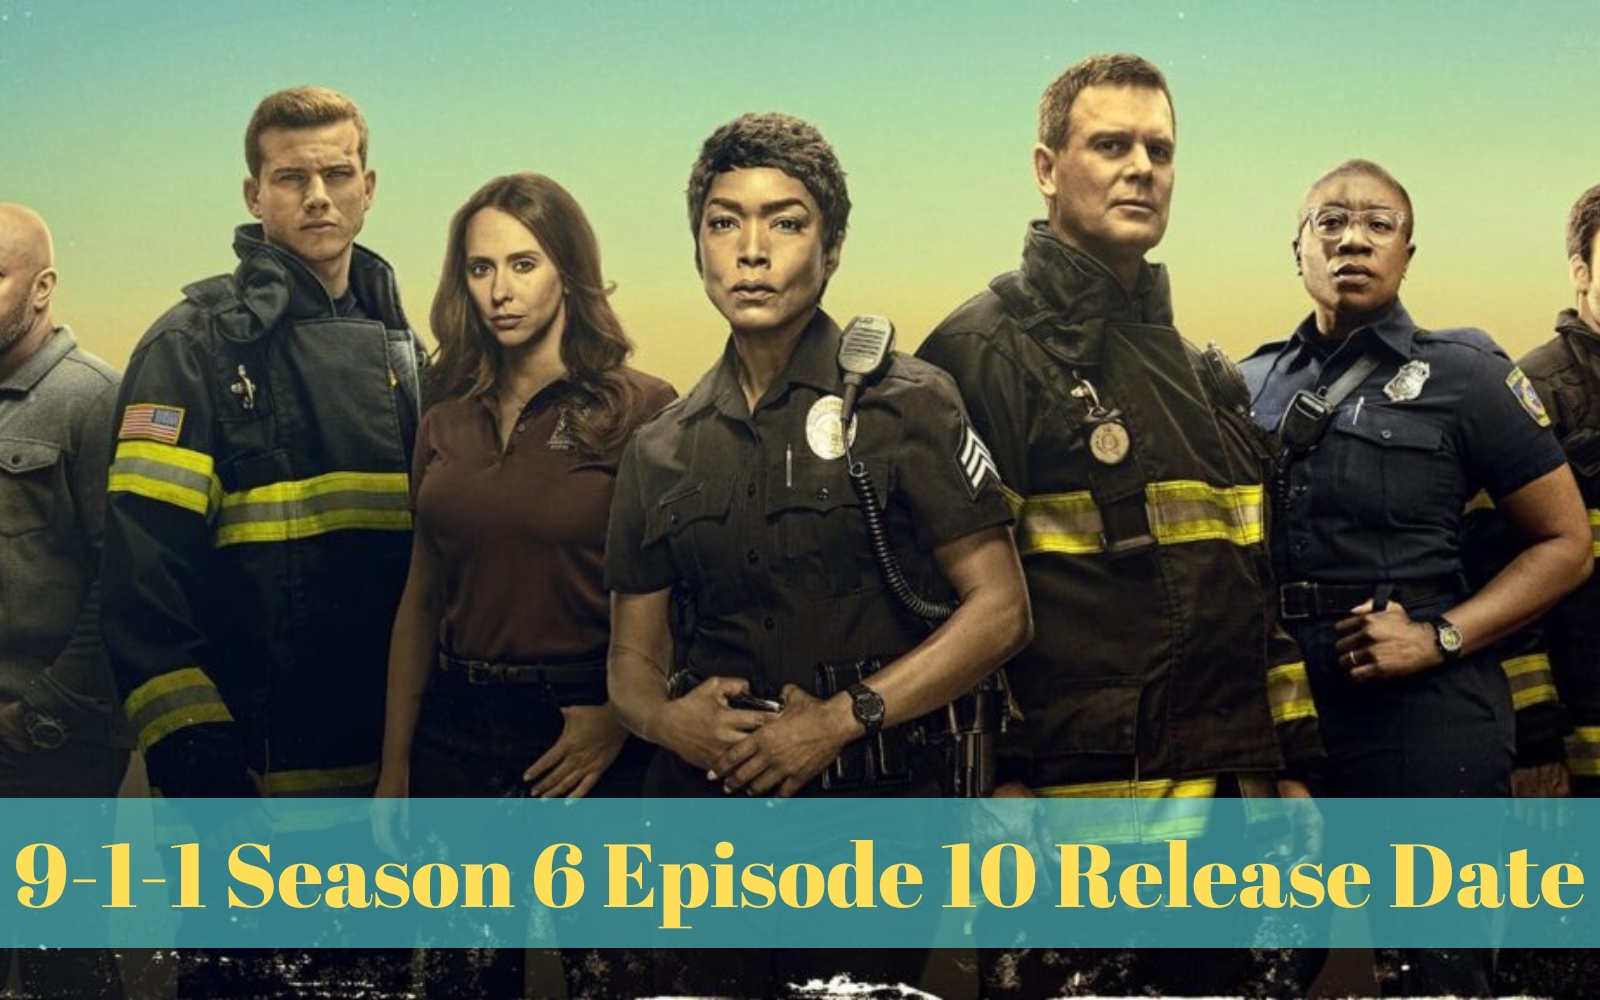 9-1-1 Season 6 Episode 10 Release Date